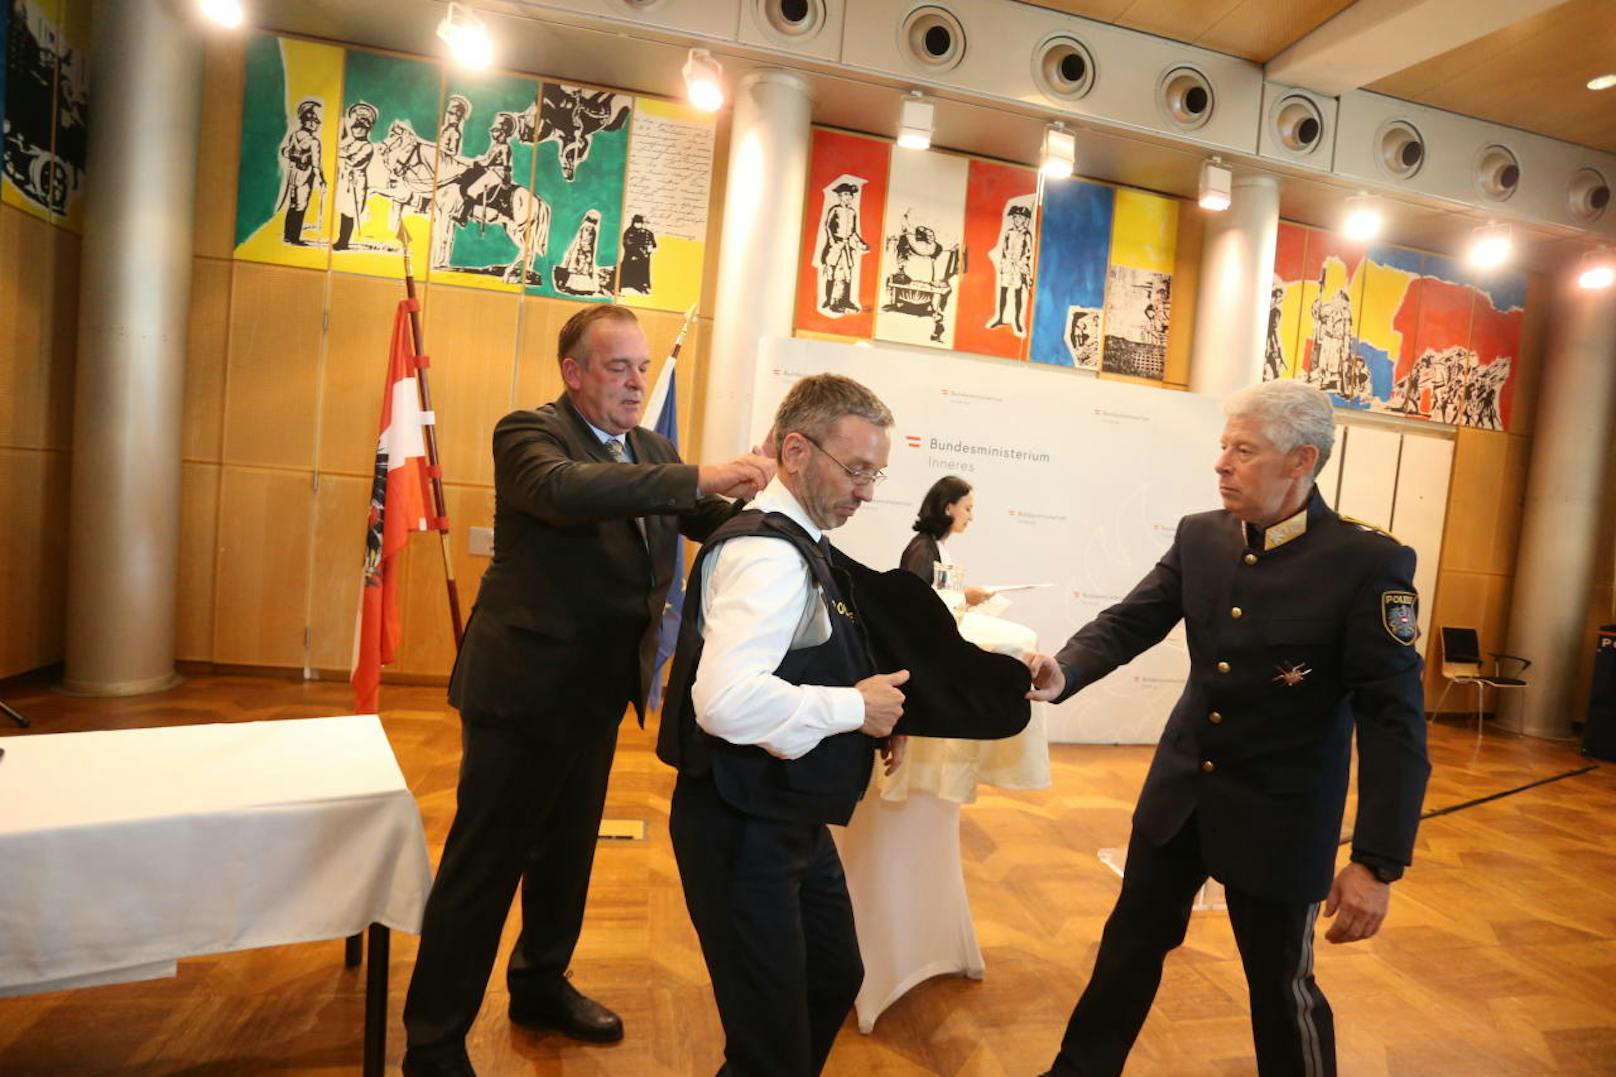 v.l.n.r. im Bild: Deutschland-CEO der Herstellerfirma Sioen Ballistics, Jörg Vois, Innenminister Herbert Kickl (FPÖ) und Landespolizeivizepräsident Michael Lepuschitz.